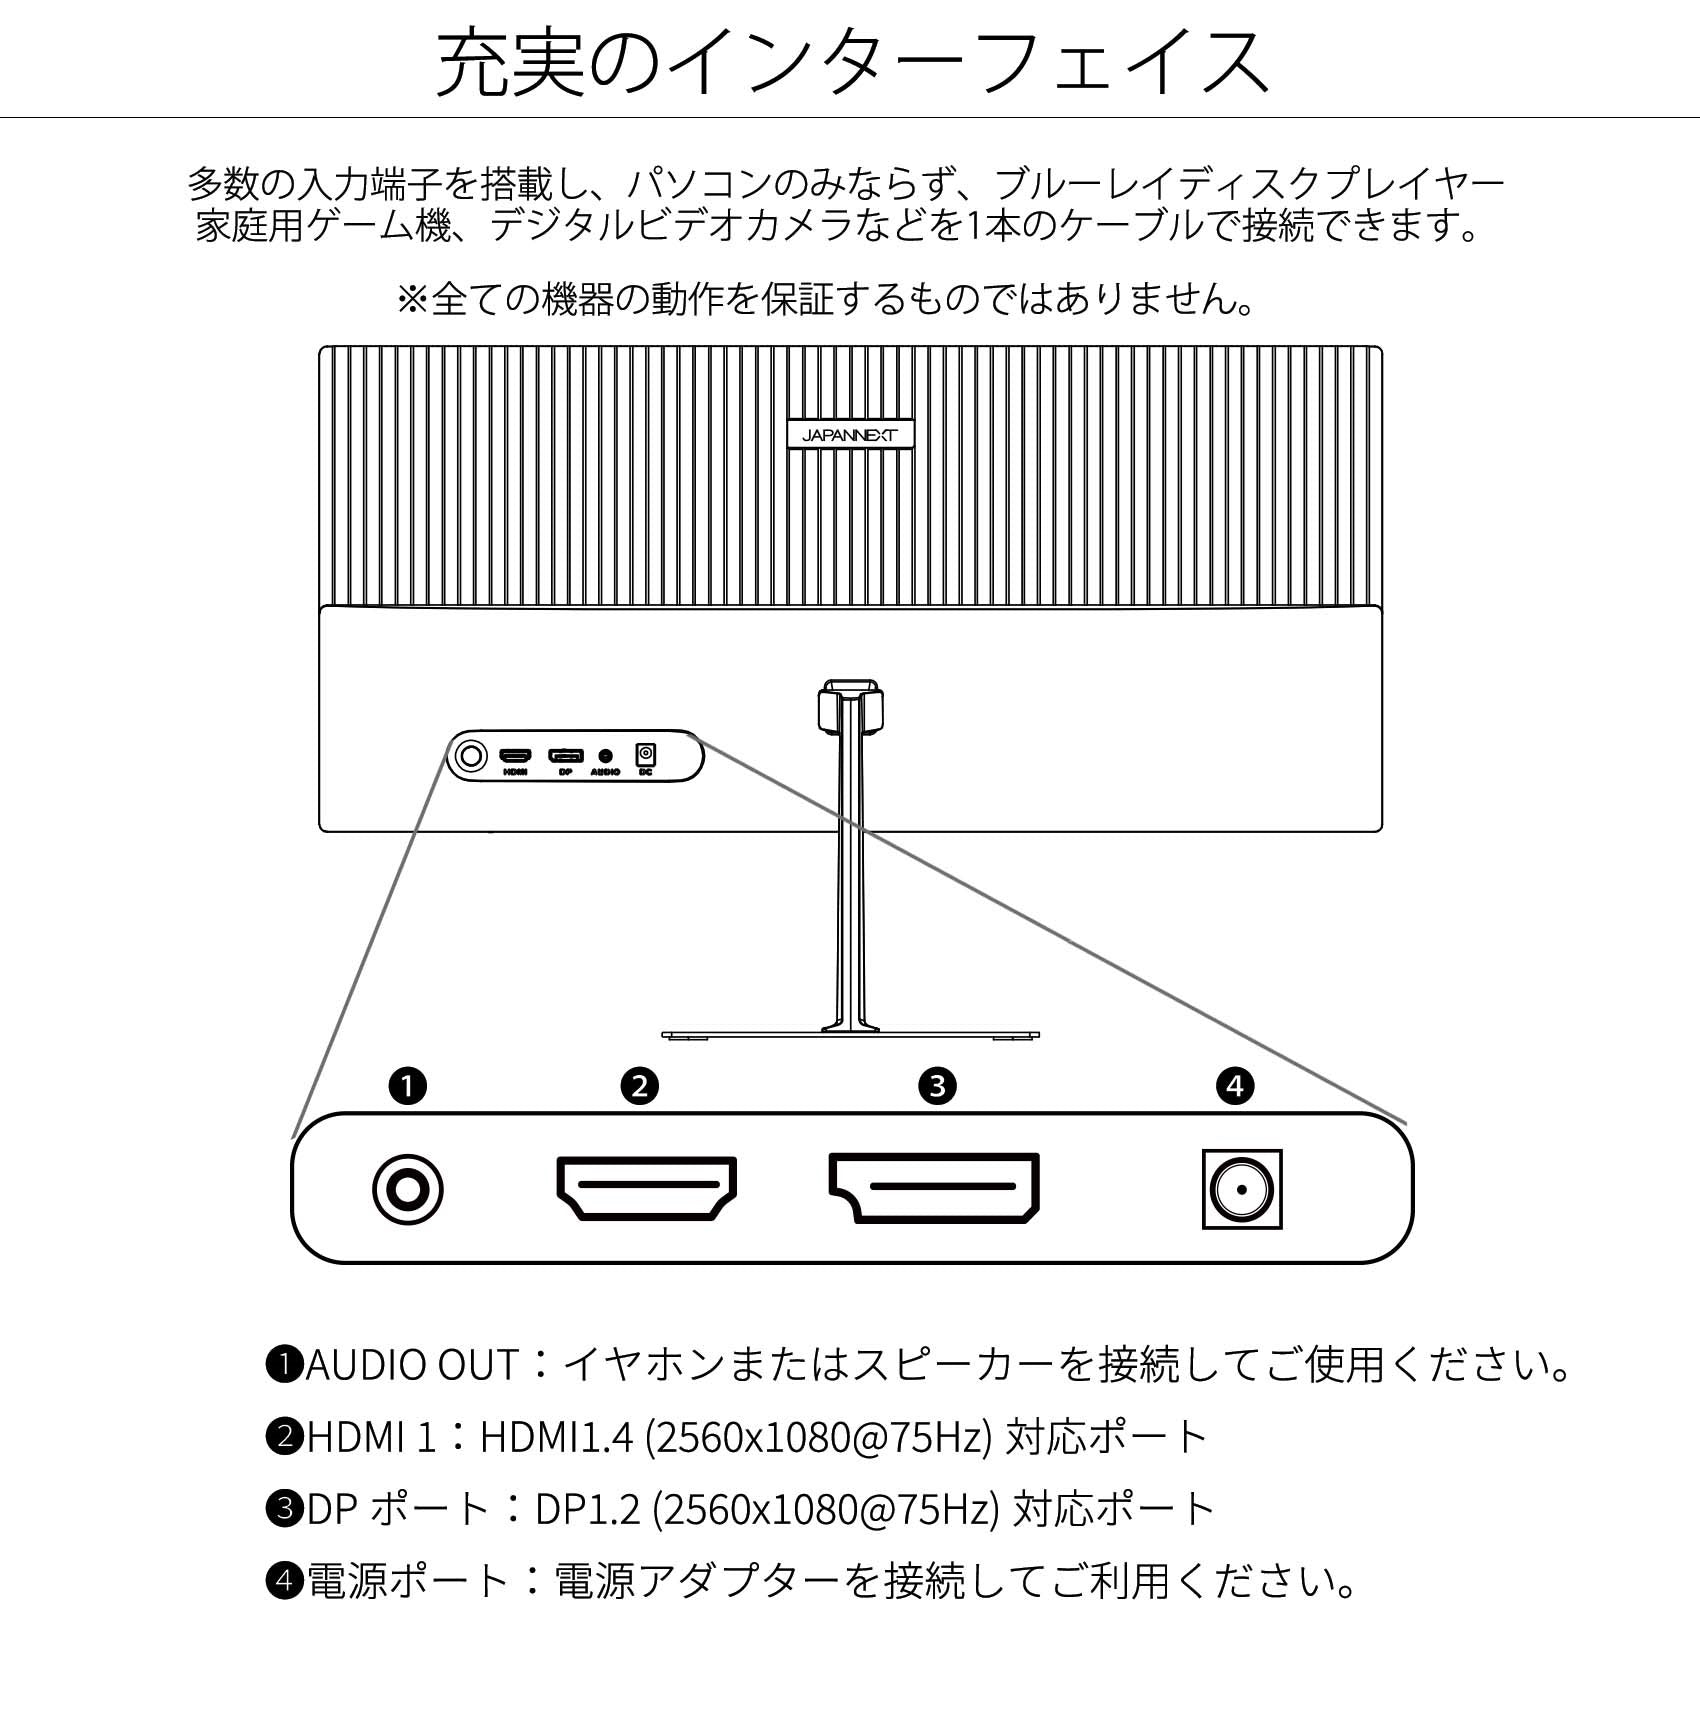 JAPANNEXT 23.3インチ ワイドFHD(2560 x 1080) 液晶モニター JN